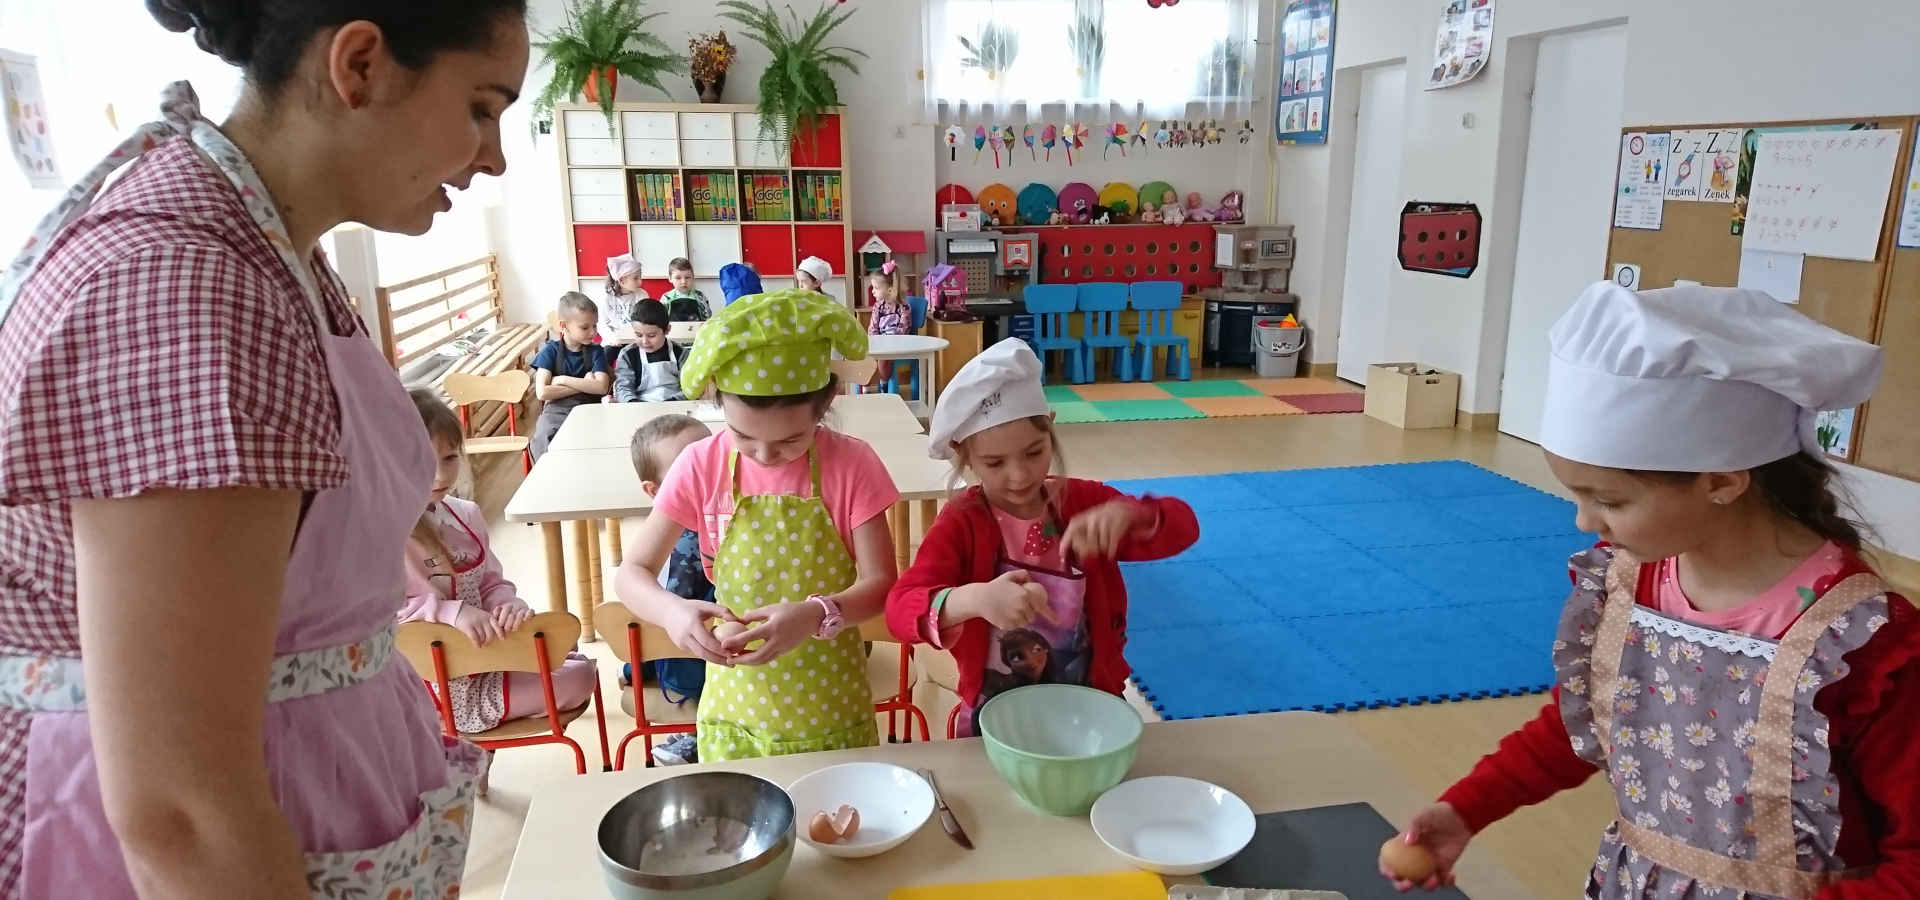 Opiekunka z dziećmi podczas prac kuchennych